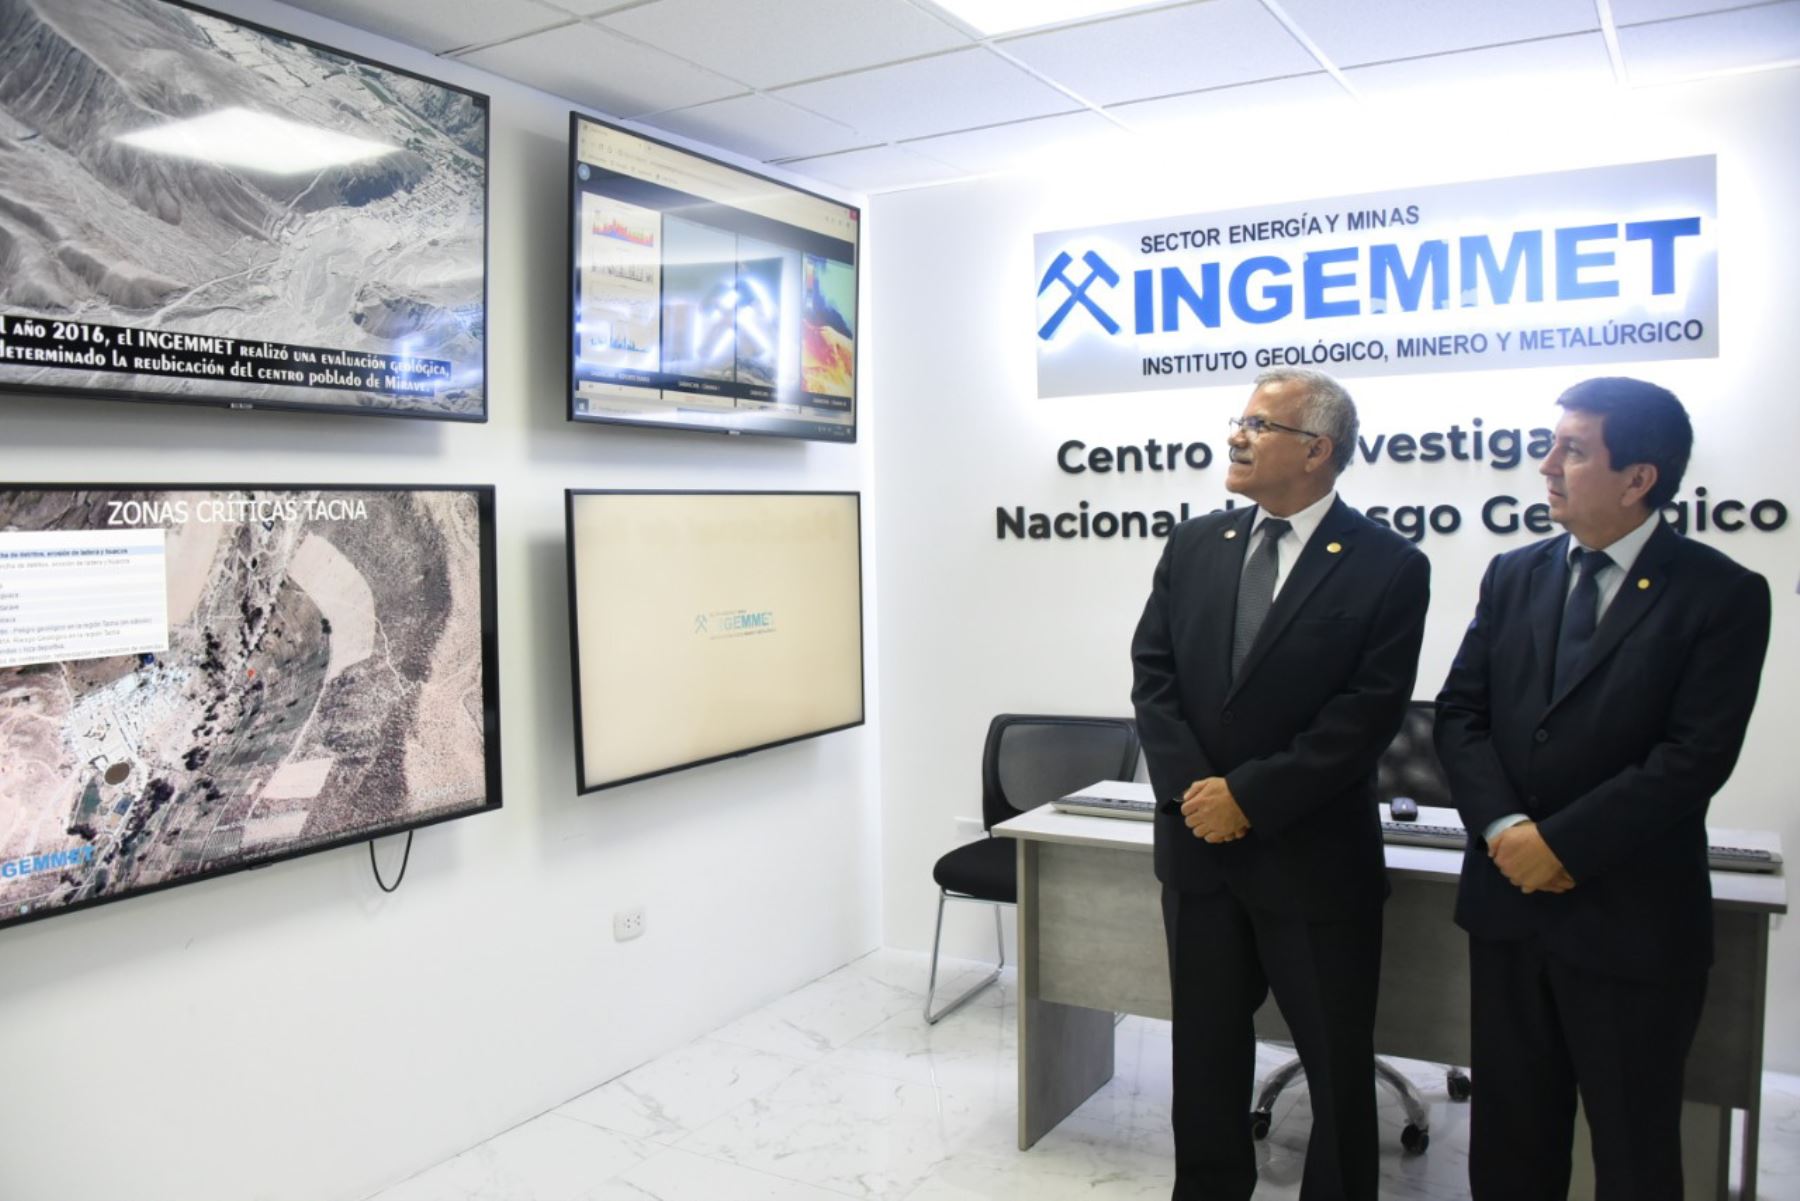 El jefe del Cenepred, Juvenal Medina, y el presidente ejecutivo del Ingemmet, Henry Luna, visitaron el Centro de Investigación Nacional de Riesgo Geológico (Cinargeo) del Ingemmet.